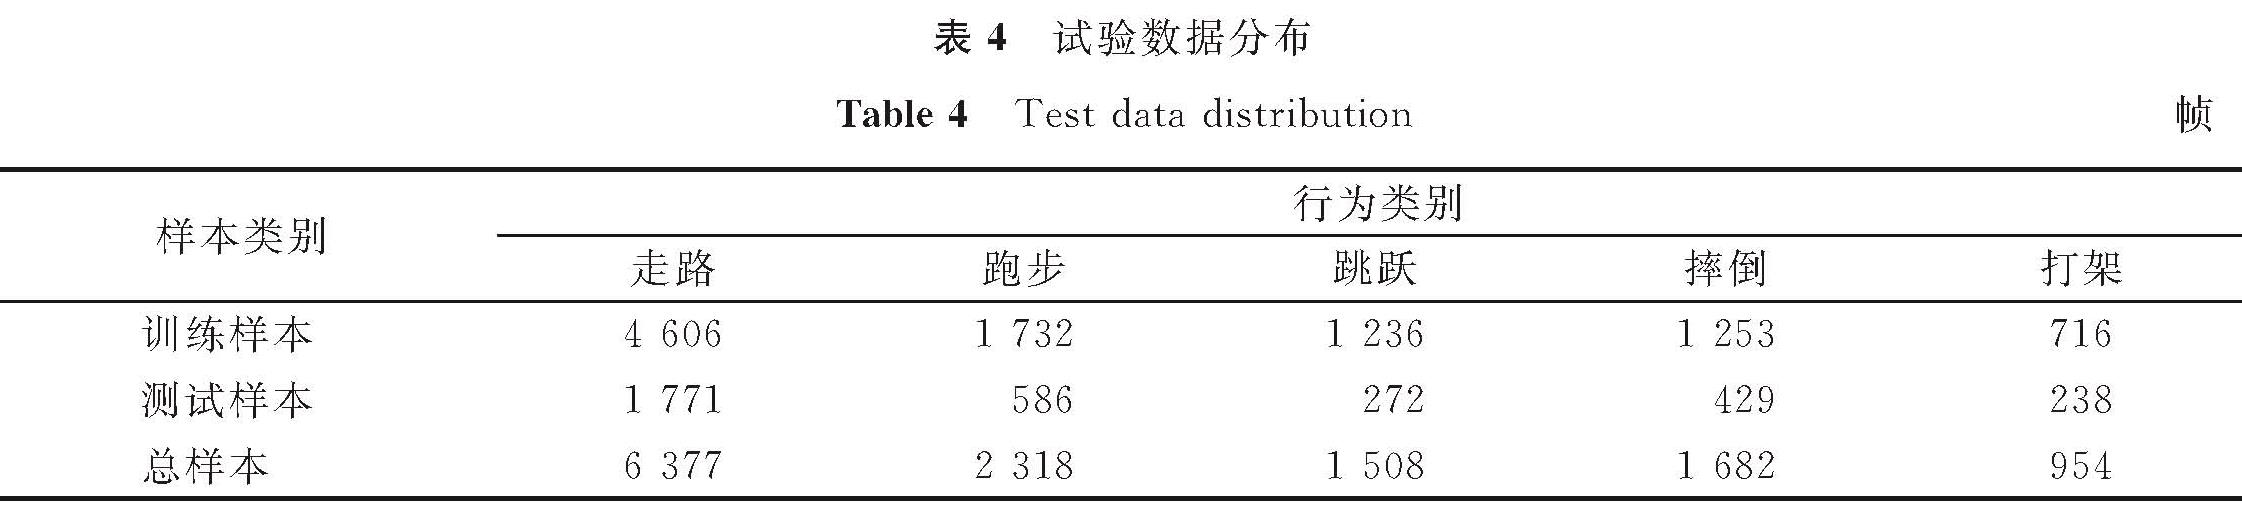 表4 试验数据分布<br/>Table 4 Test data distribution